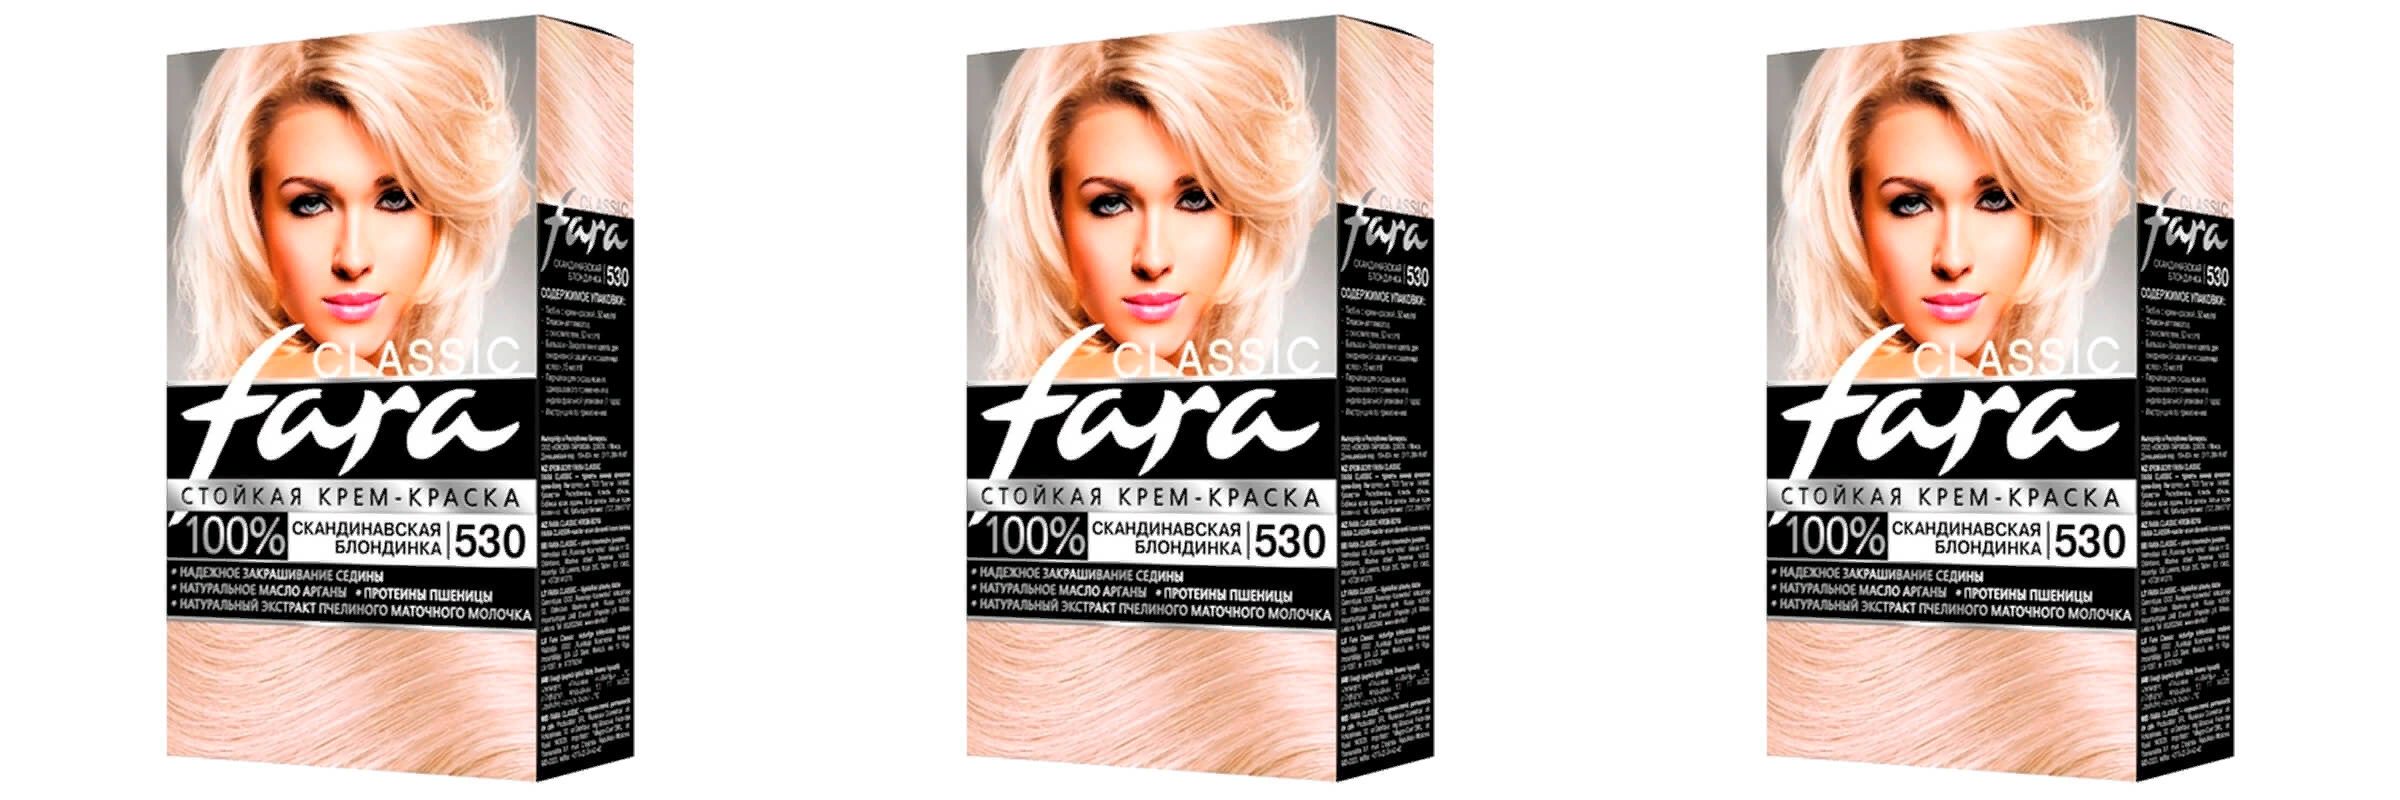 Краска для волос Fara Classic скандинавская блондинка 530, 3шт асгард скандинавская мифология